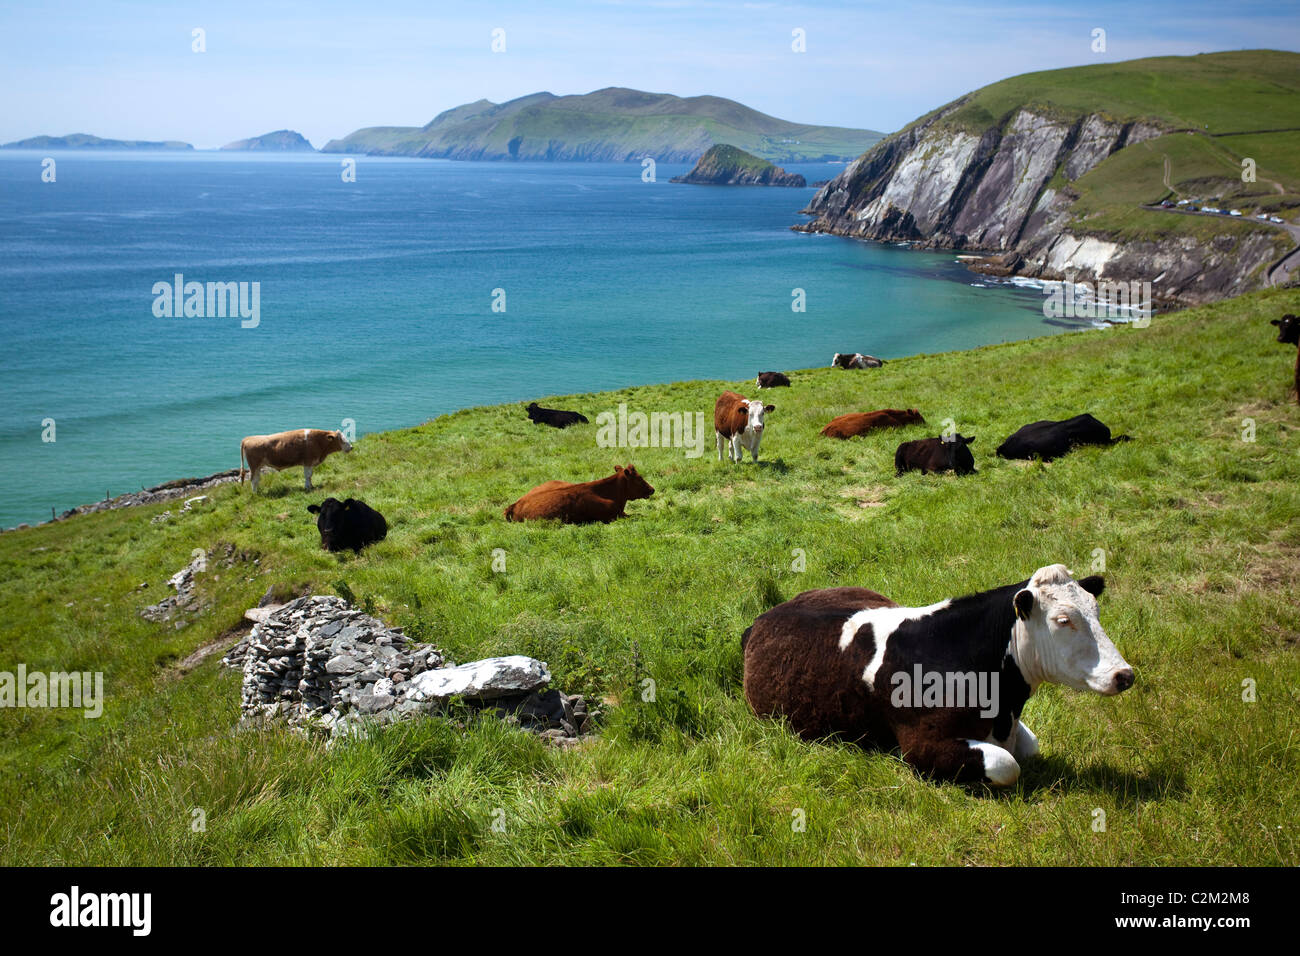 Vaches se reposant au-dessus de la baie de Coumeenoole, péninsule de Dingle, comté de Kerry, Irlande. Banque D'Images